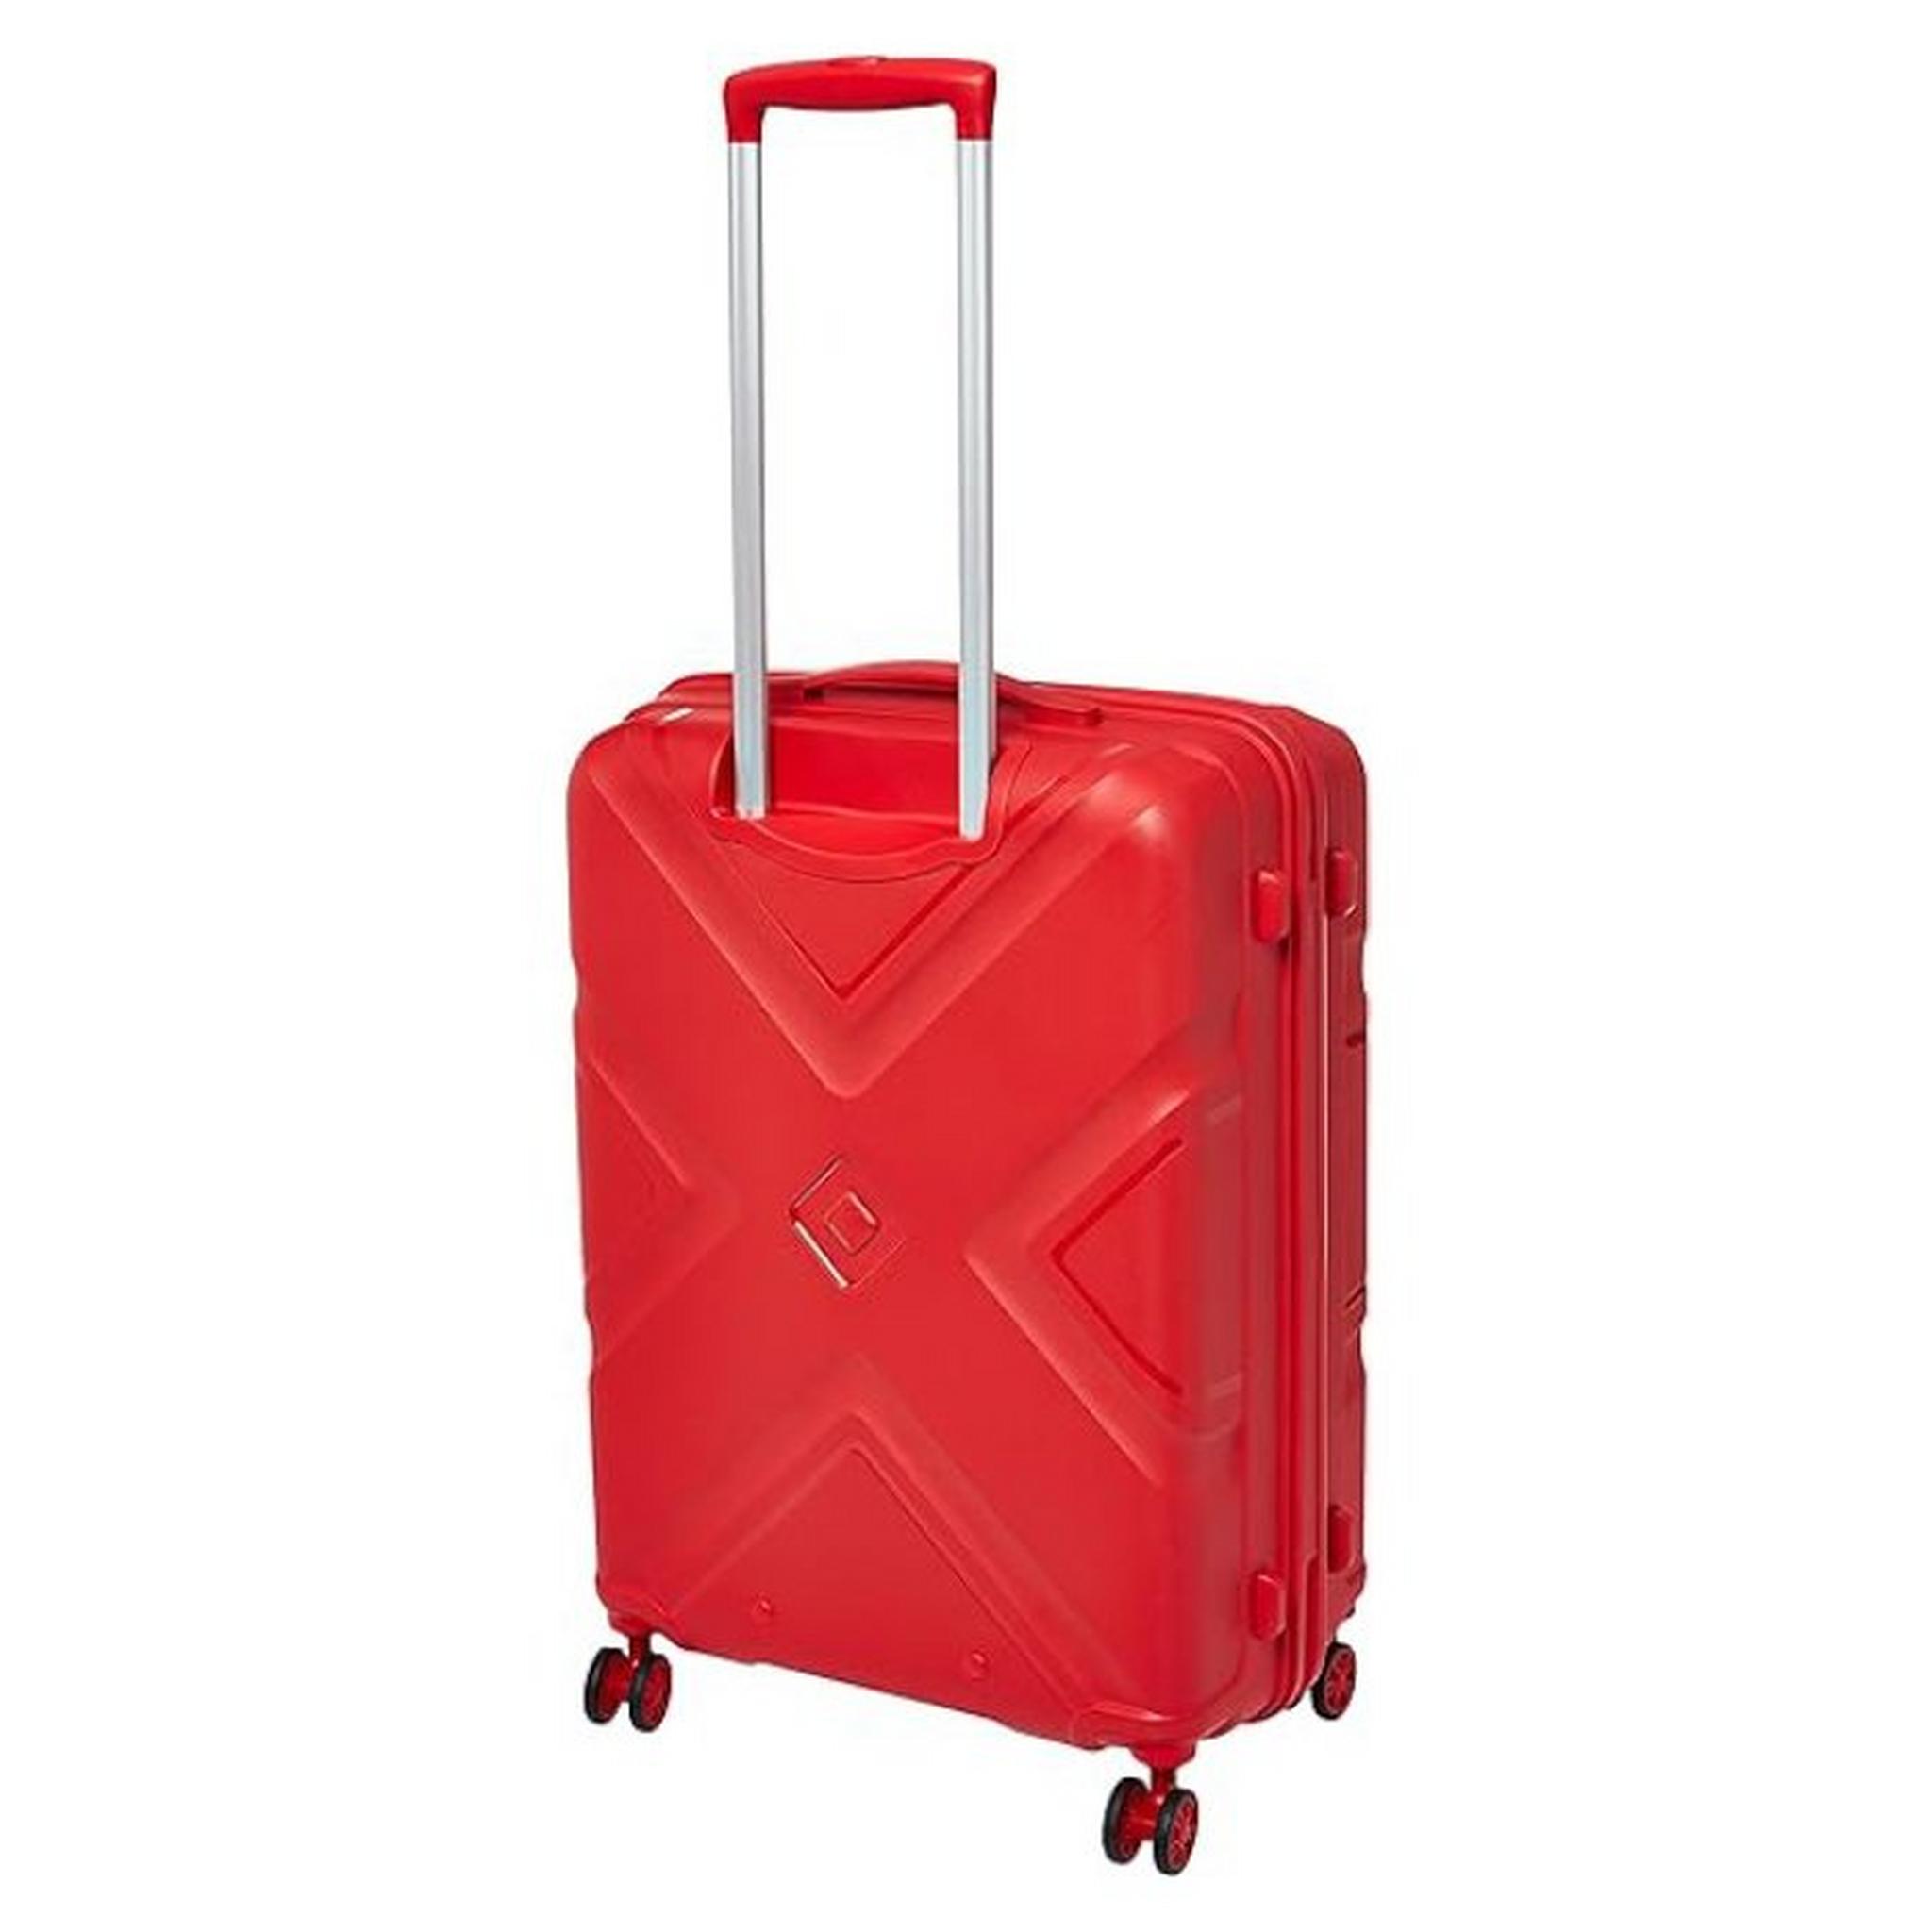 حقيبة سفر كروس بجوانب صلبة وعجلات دوارة من أمريكان توريستر(3 قطع)، 79+68+55 سم، LE2X00104 – أحمر